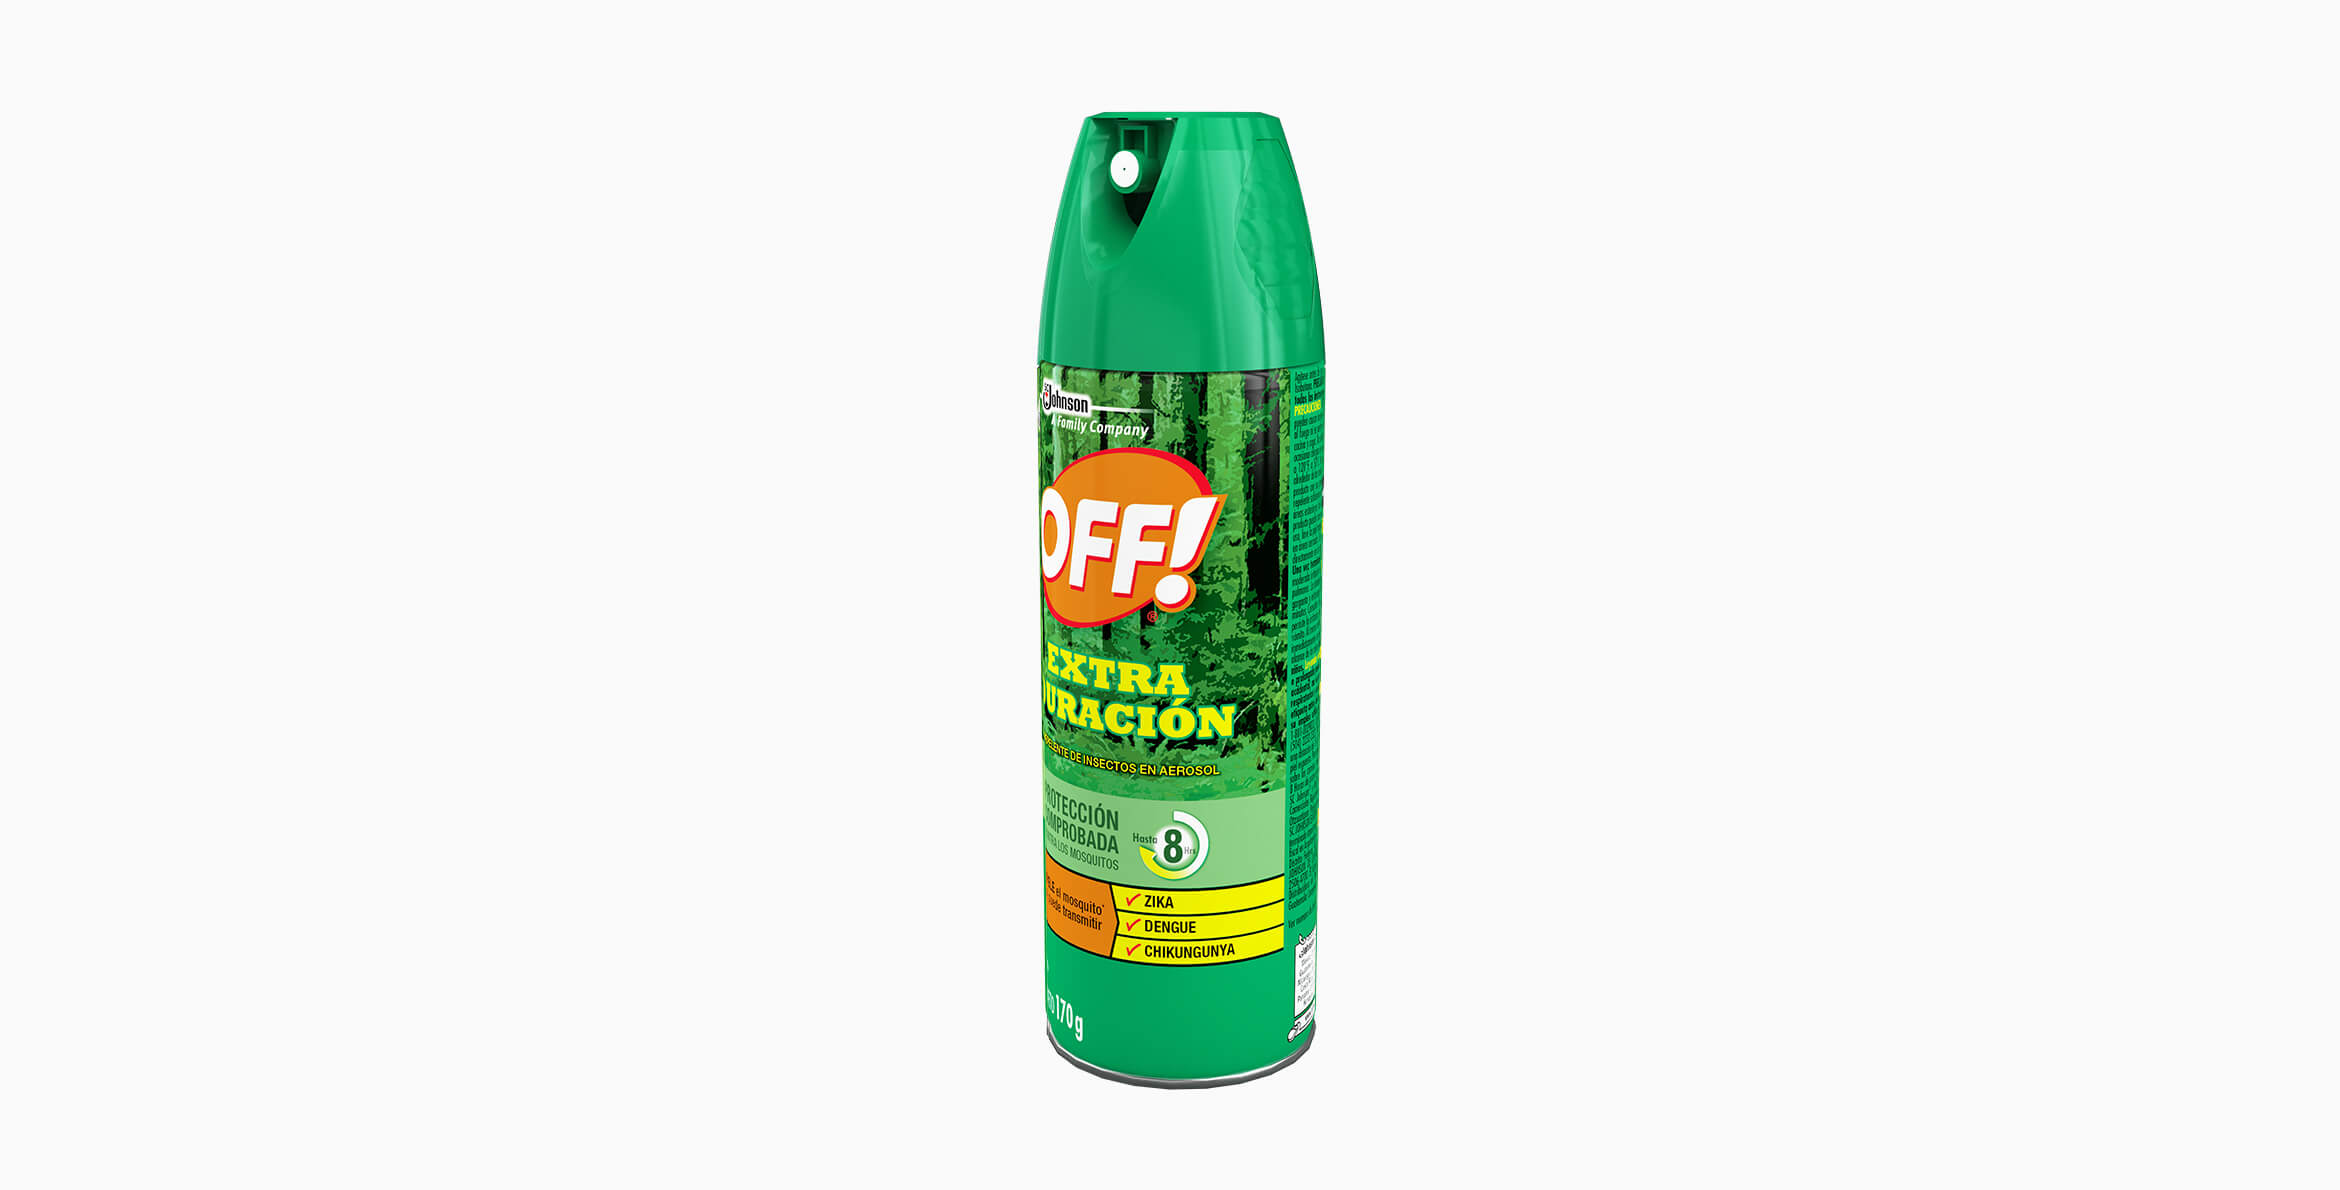 OFF!® Extra Duración Repelente De Insectos En Aerosol 170g